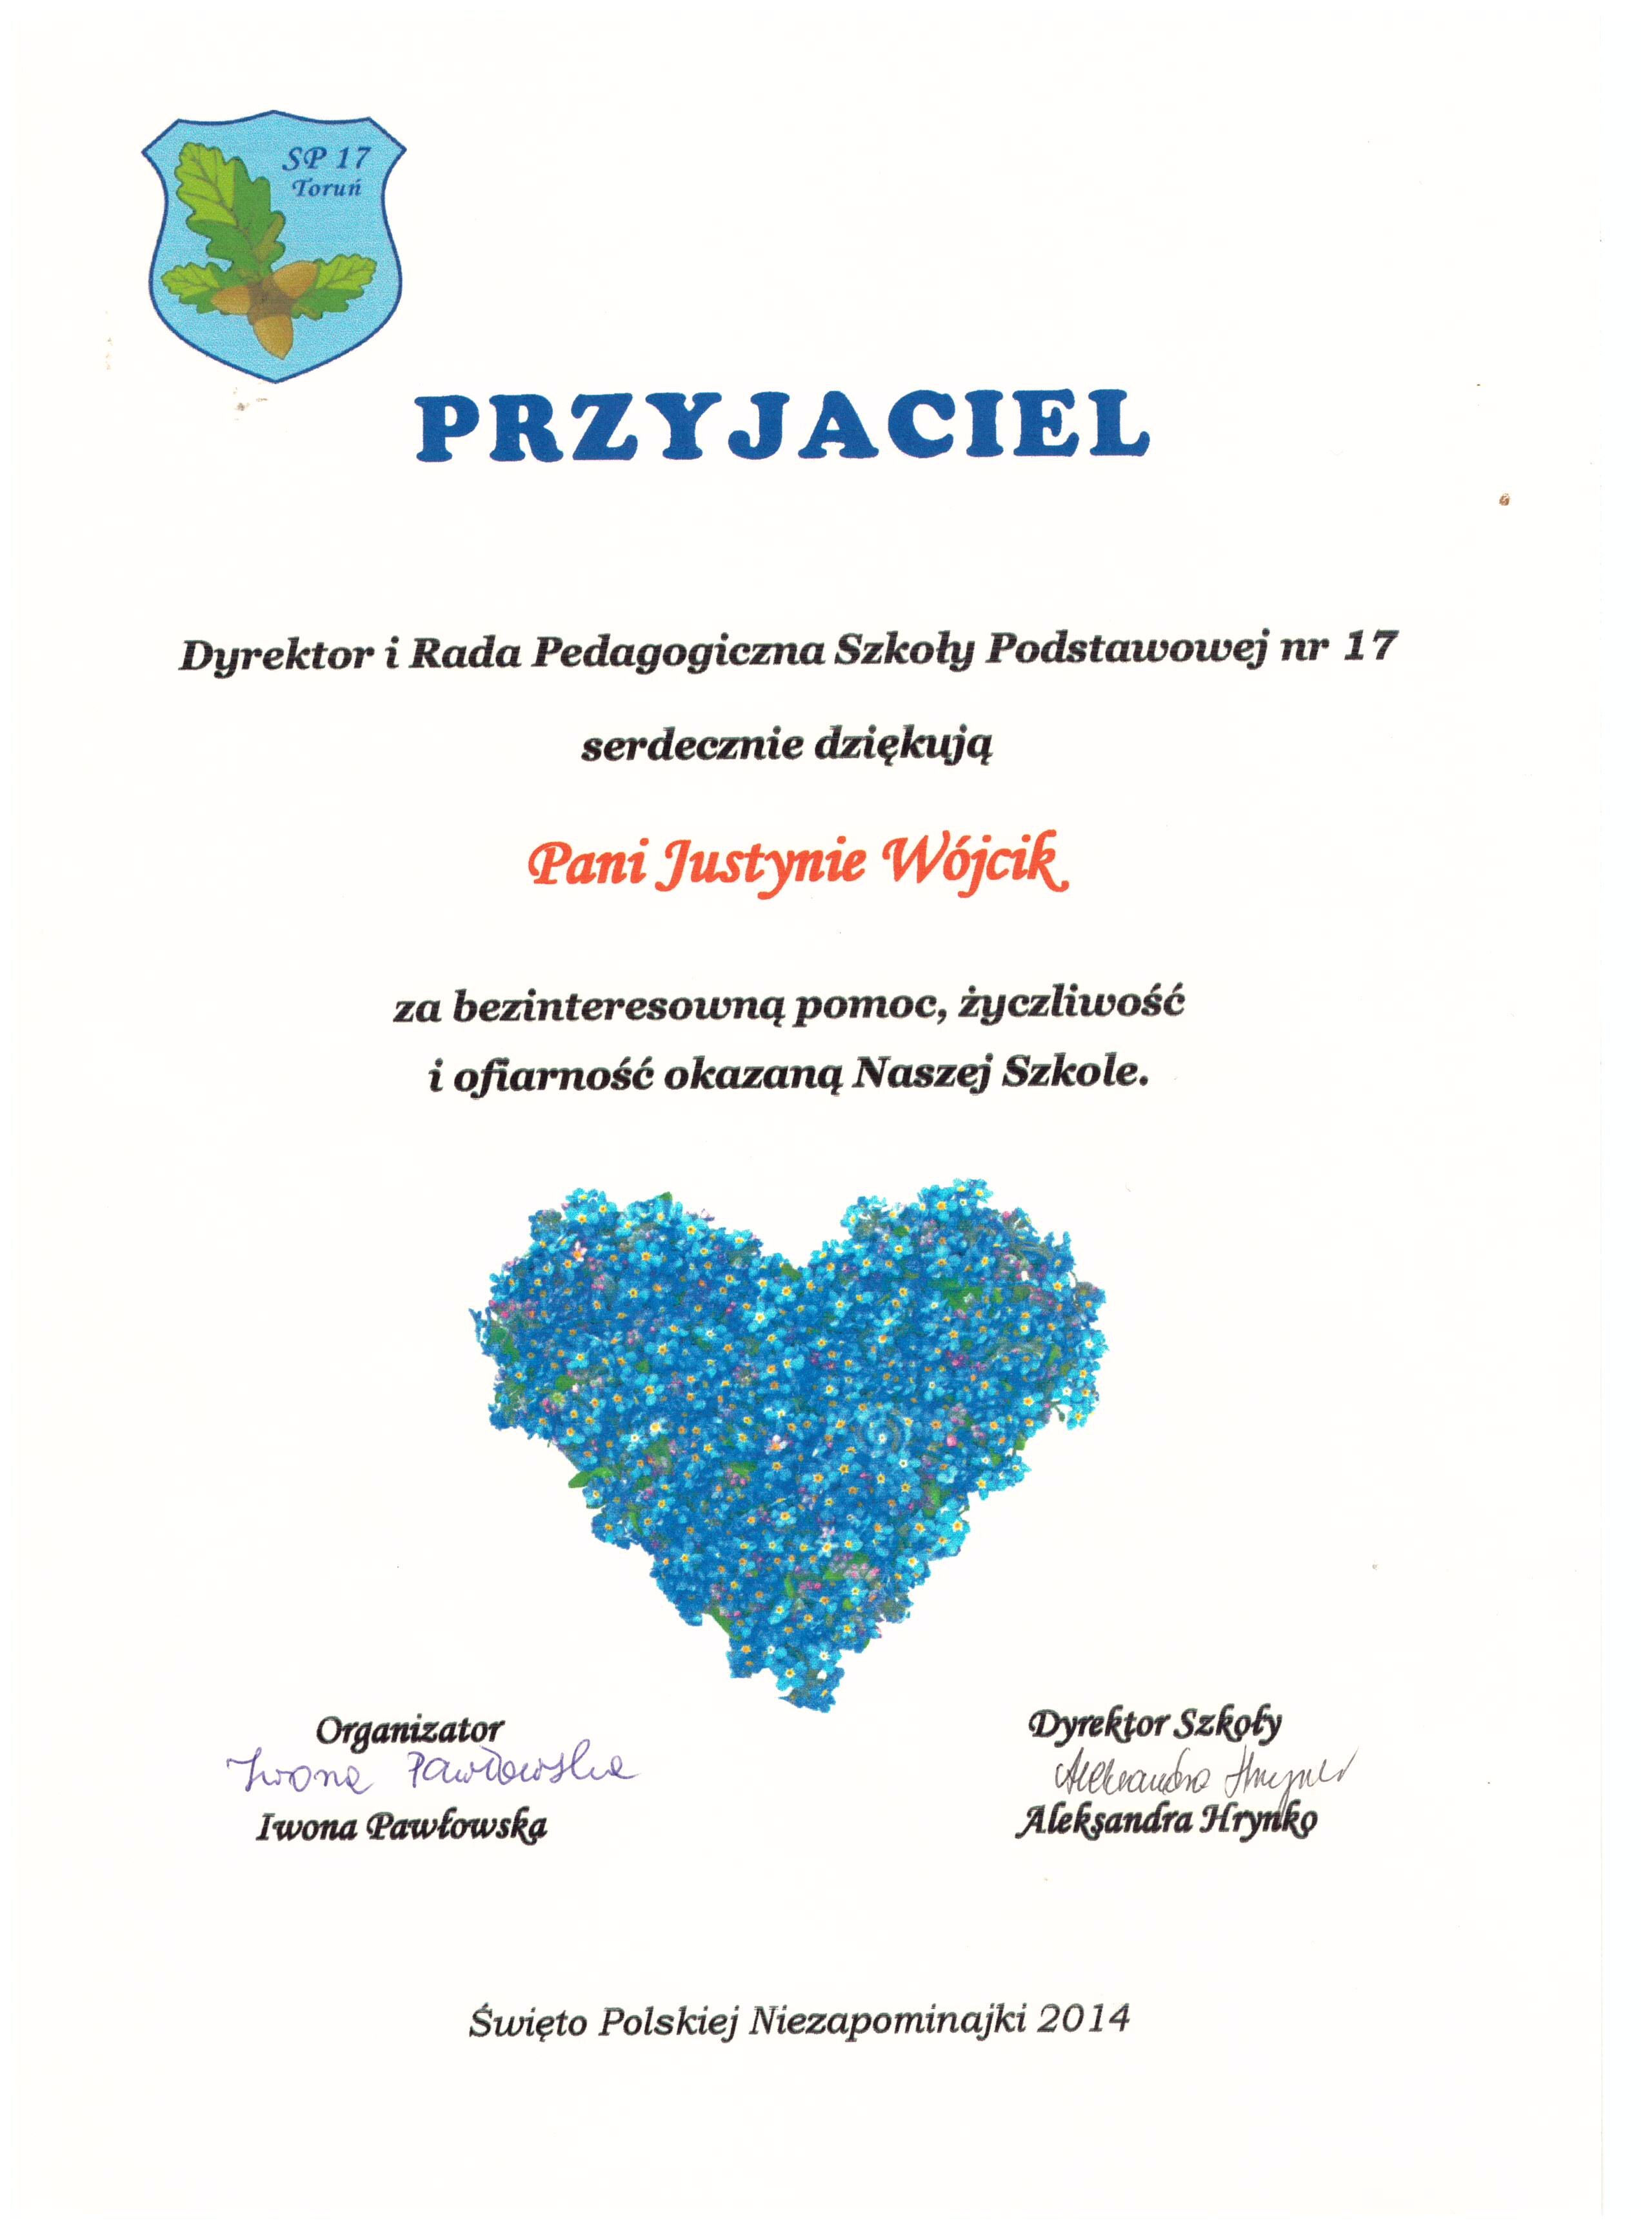 2014 - Święto Polskiej Niezapominajki